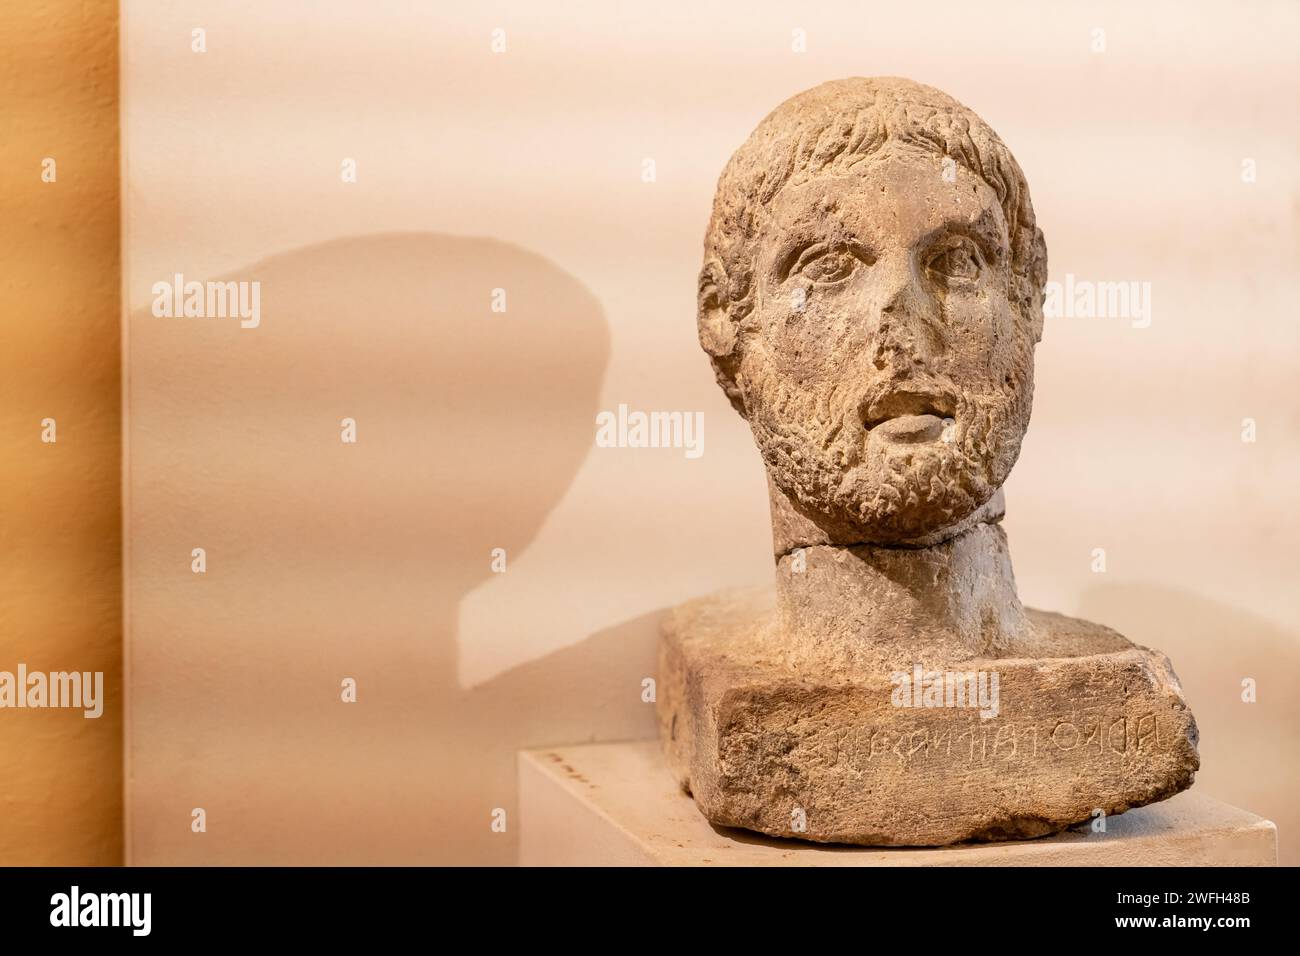 Nahaufnahme eines alten männlichen römischen Kopfes, der in Stein gemeißelt wurde Stockfoto